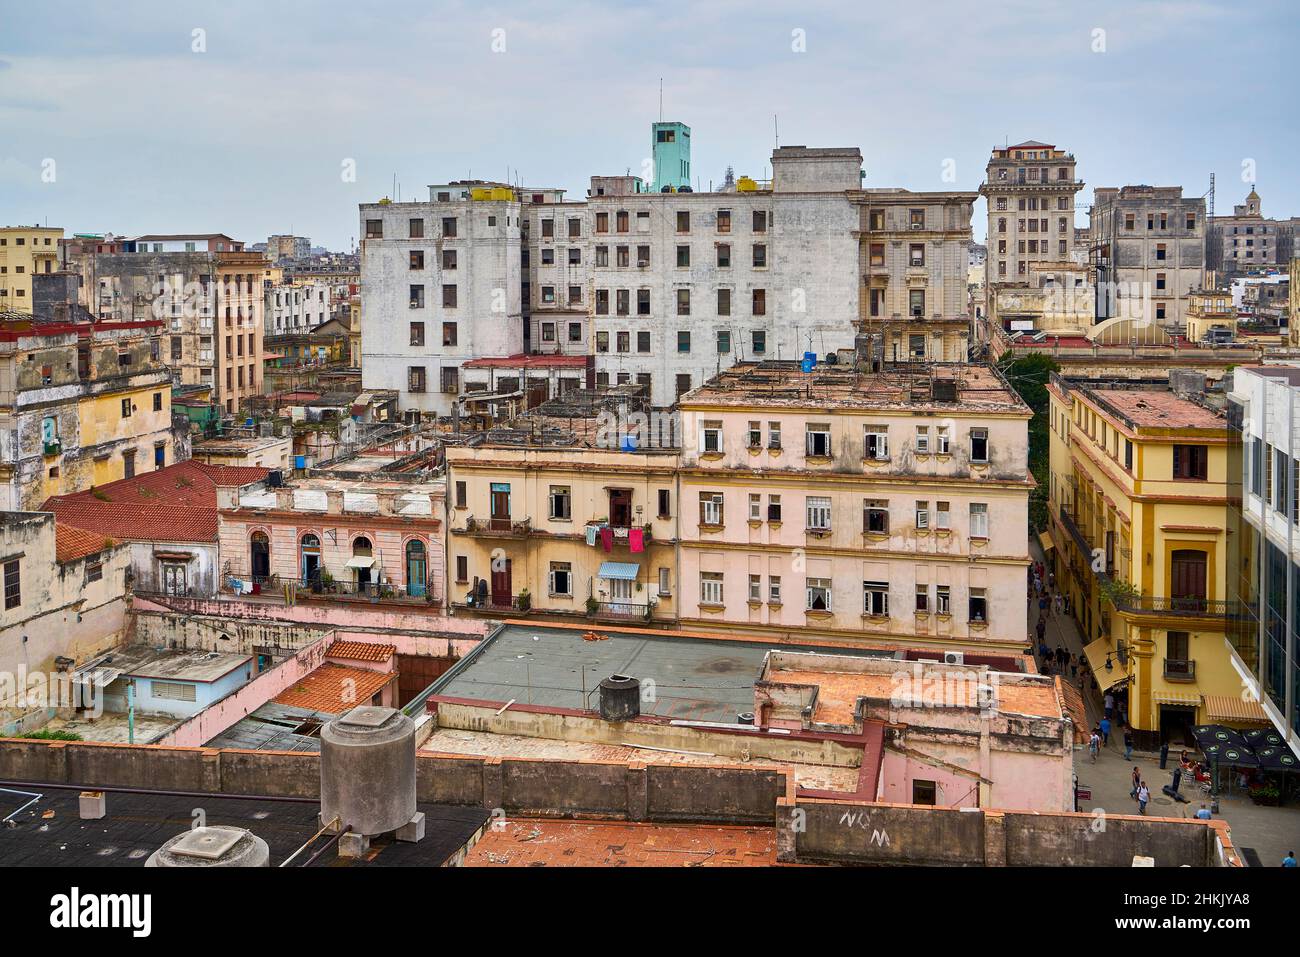 Over the rooftops in the inner city of Havana, Cuba, La Habana Stock Photo